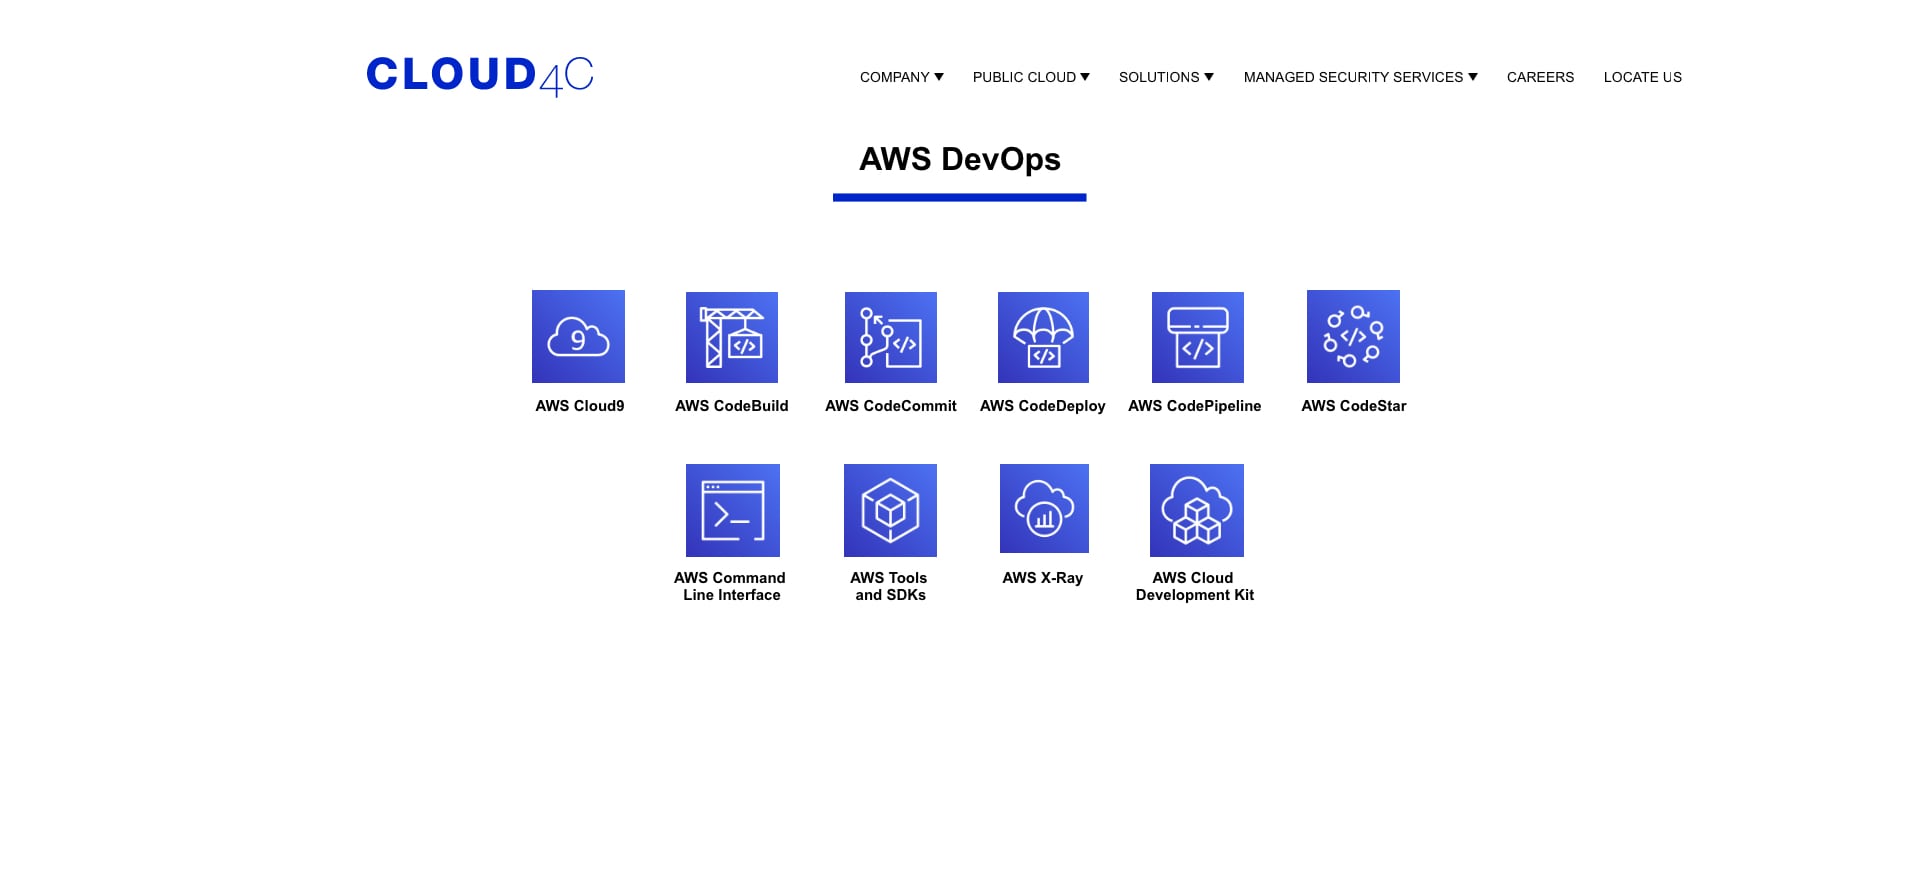 Full Suite of Cloud4C DevOps Services